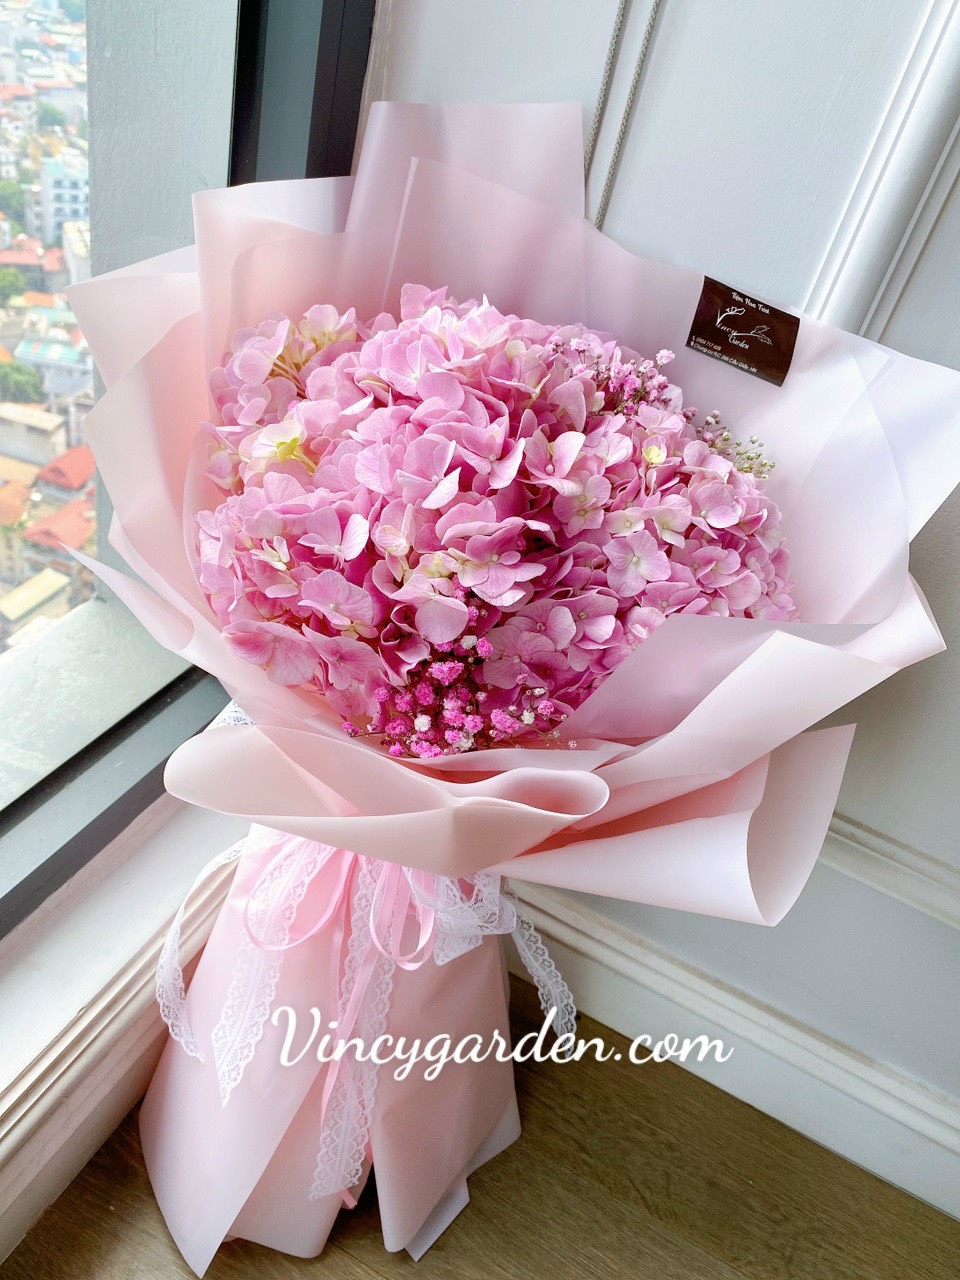 Bó hoa cẩm tú cầu hồng phấn ngọt ngào